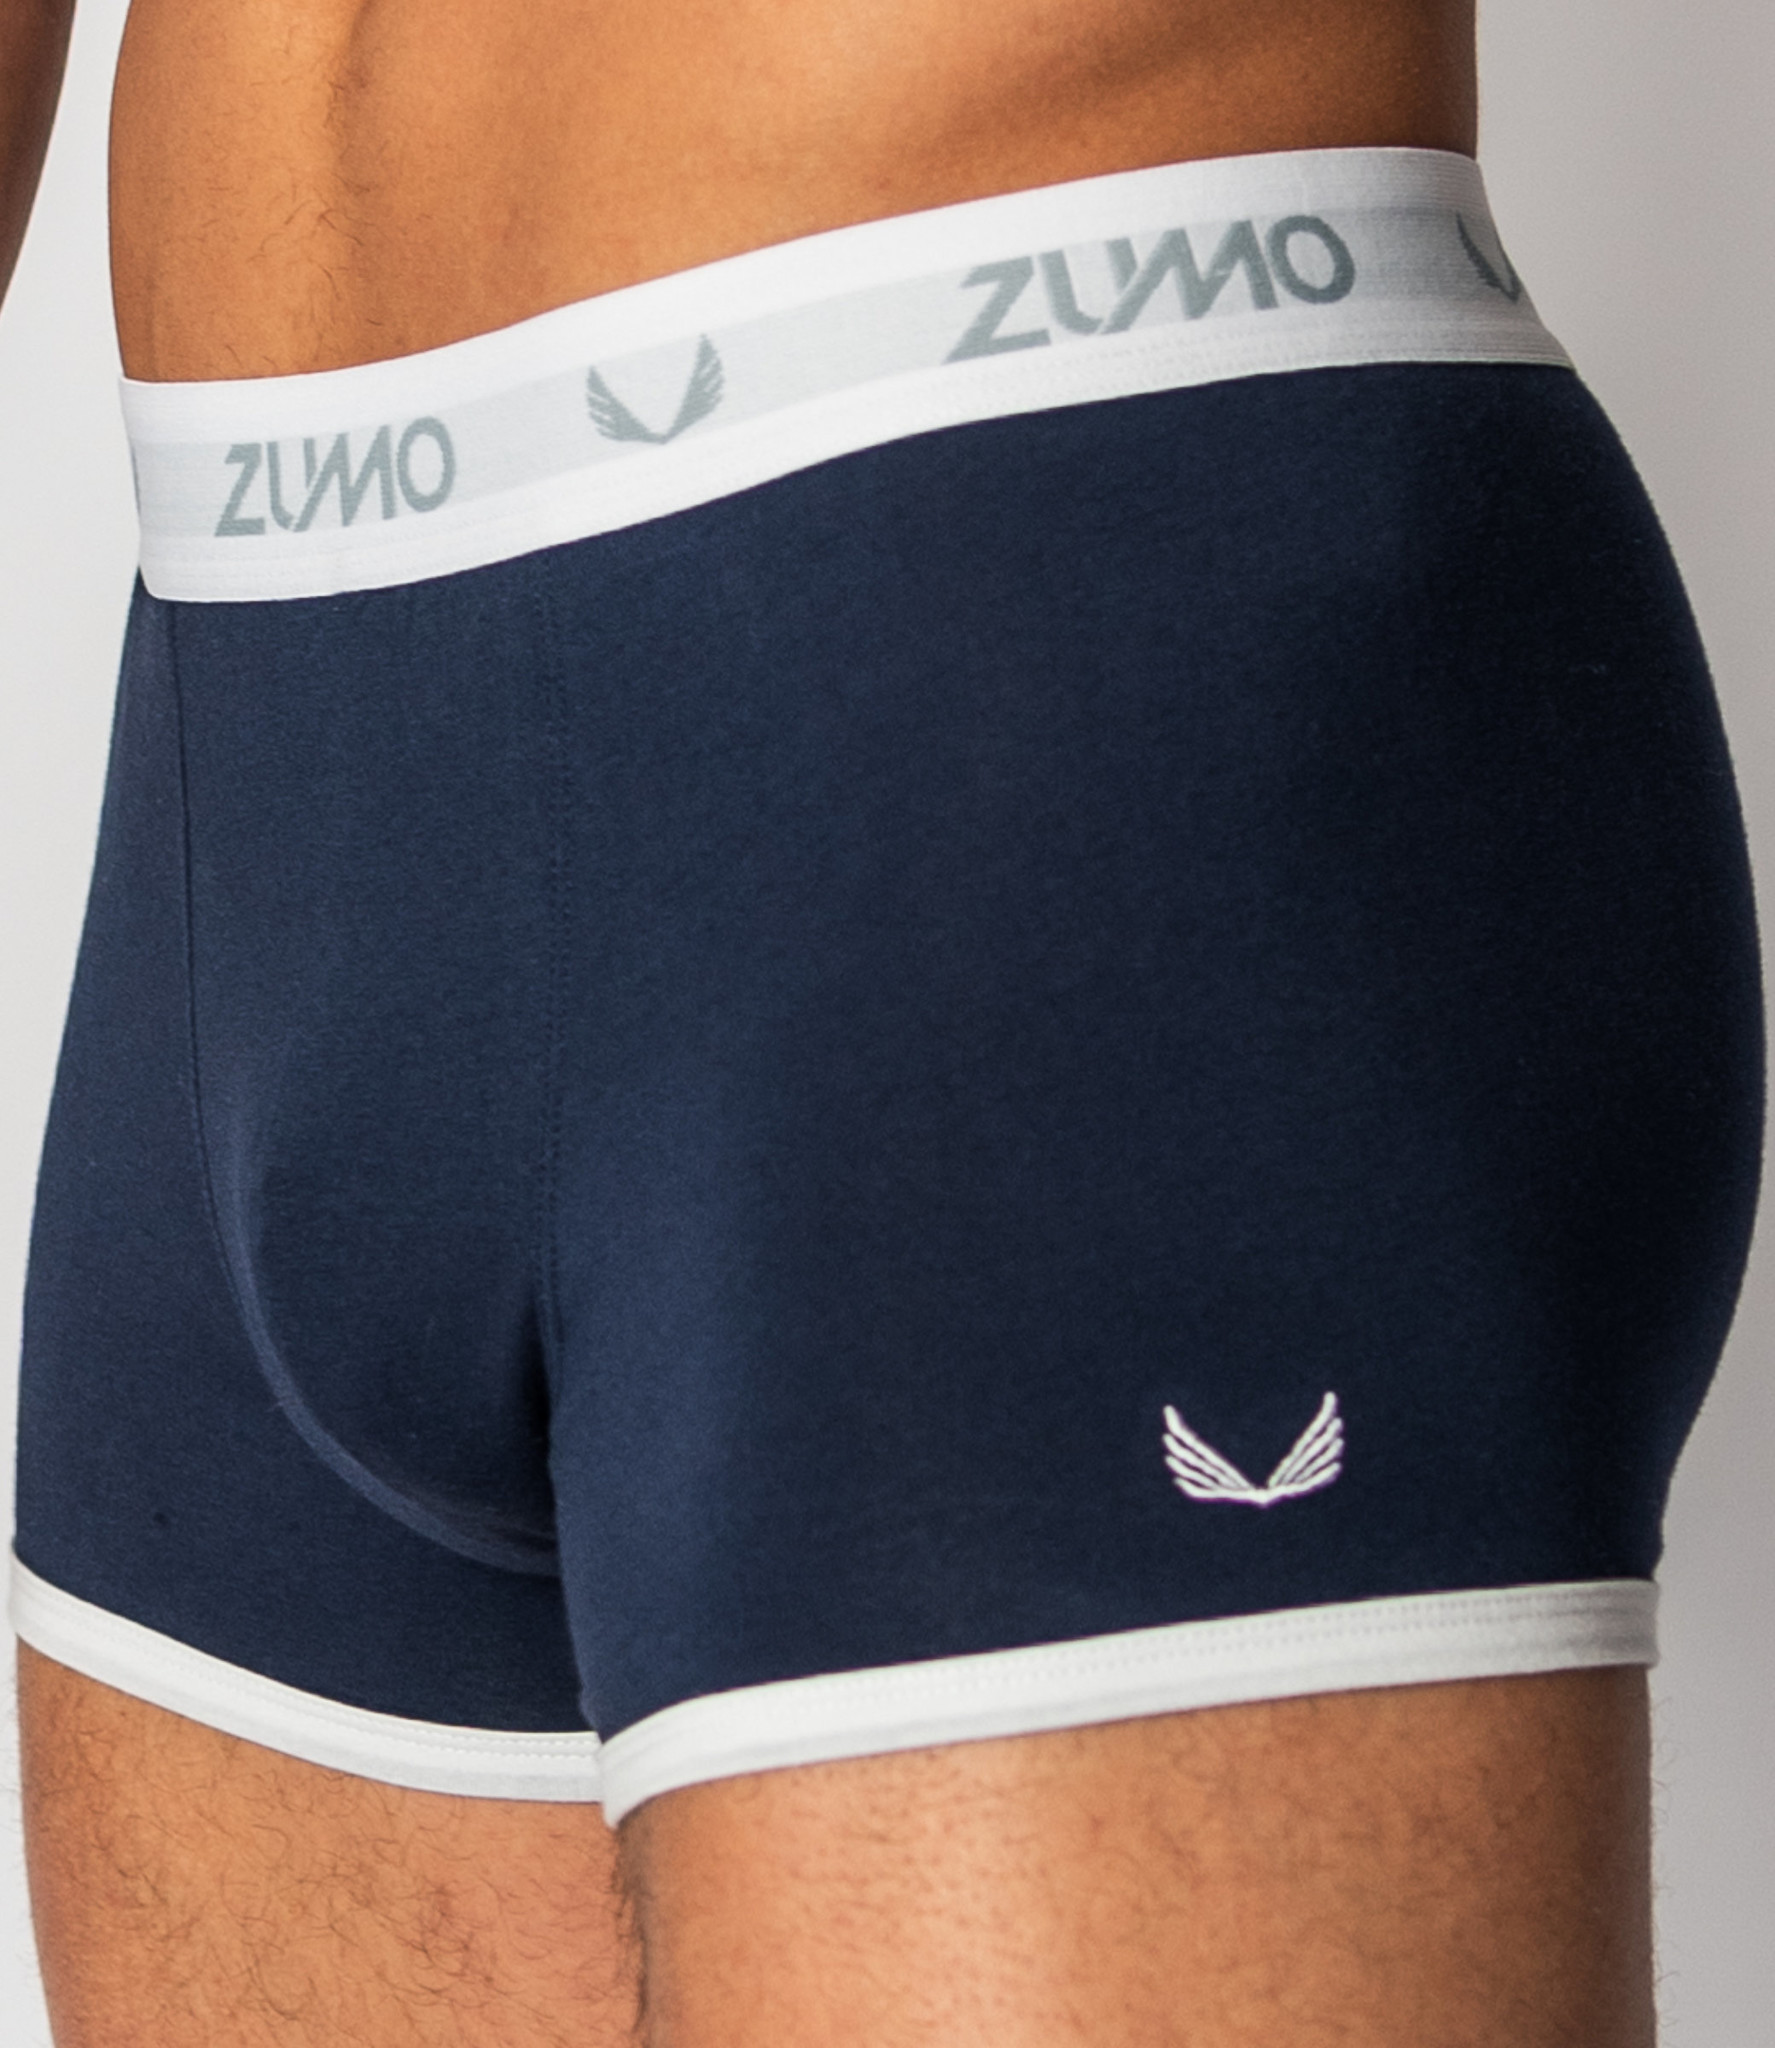 Zumo Fit Underwear LEROY-CONTRAST NavyWhite - ZUMO